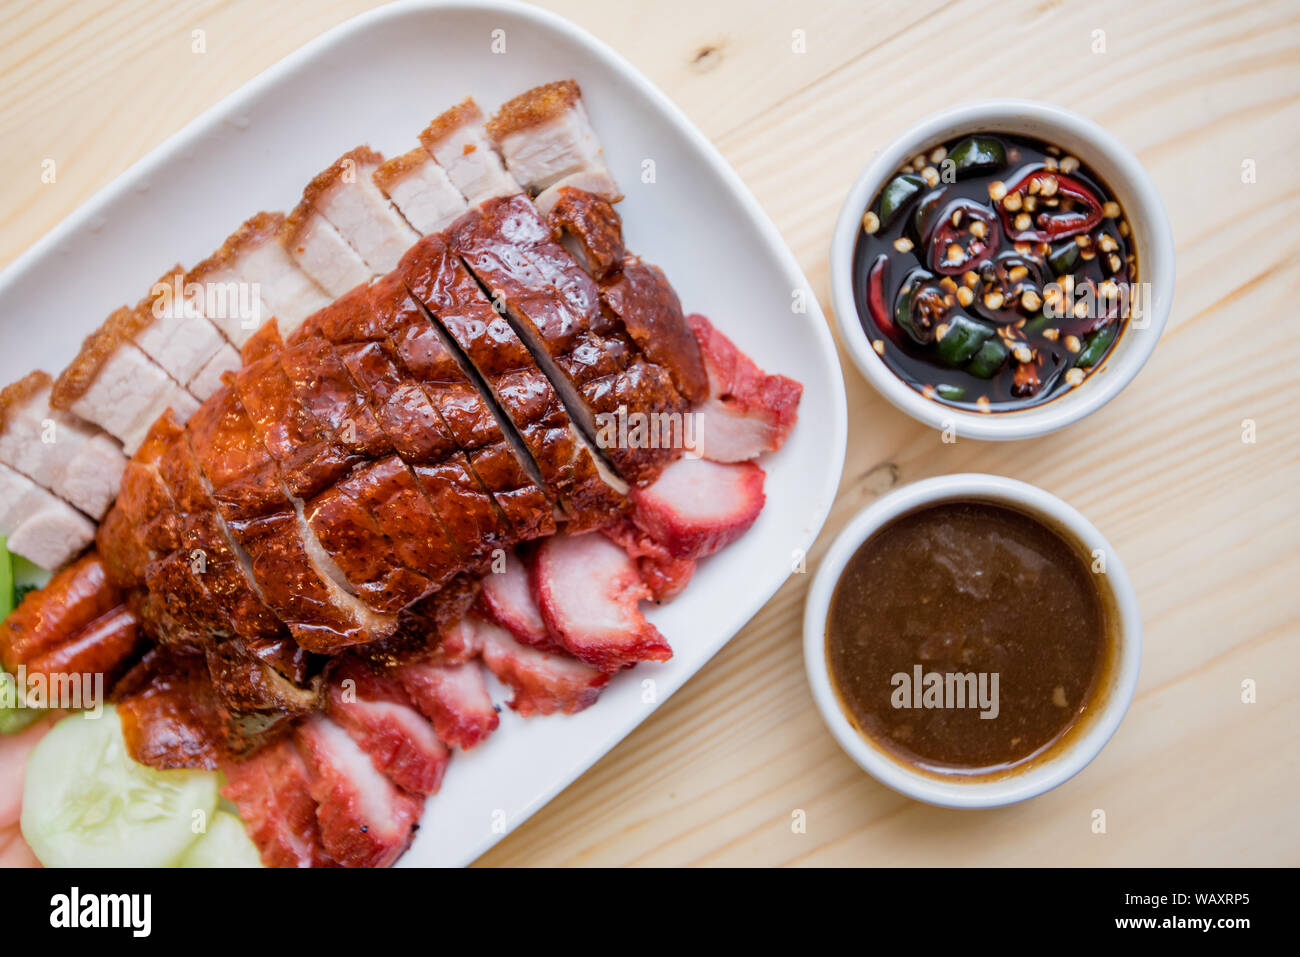 Roast duck and roast pork, Thai food, Chinese food Stock Photo